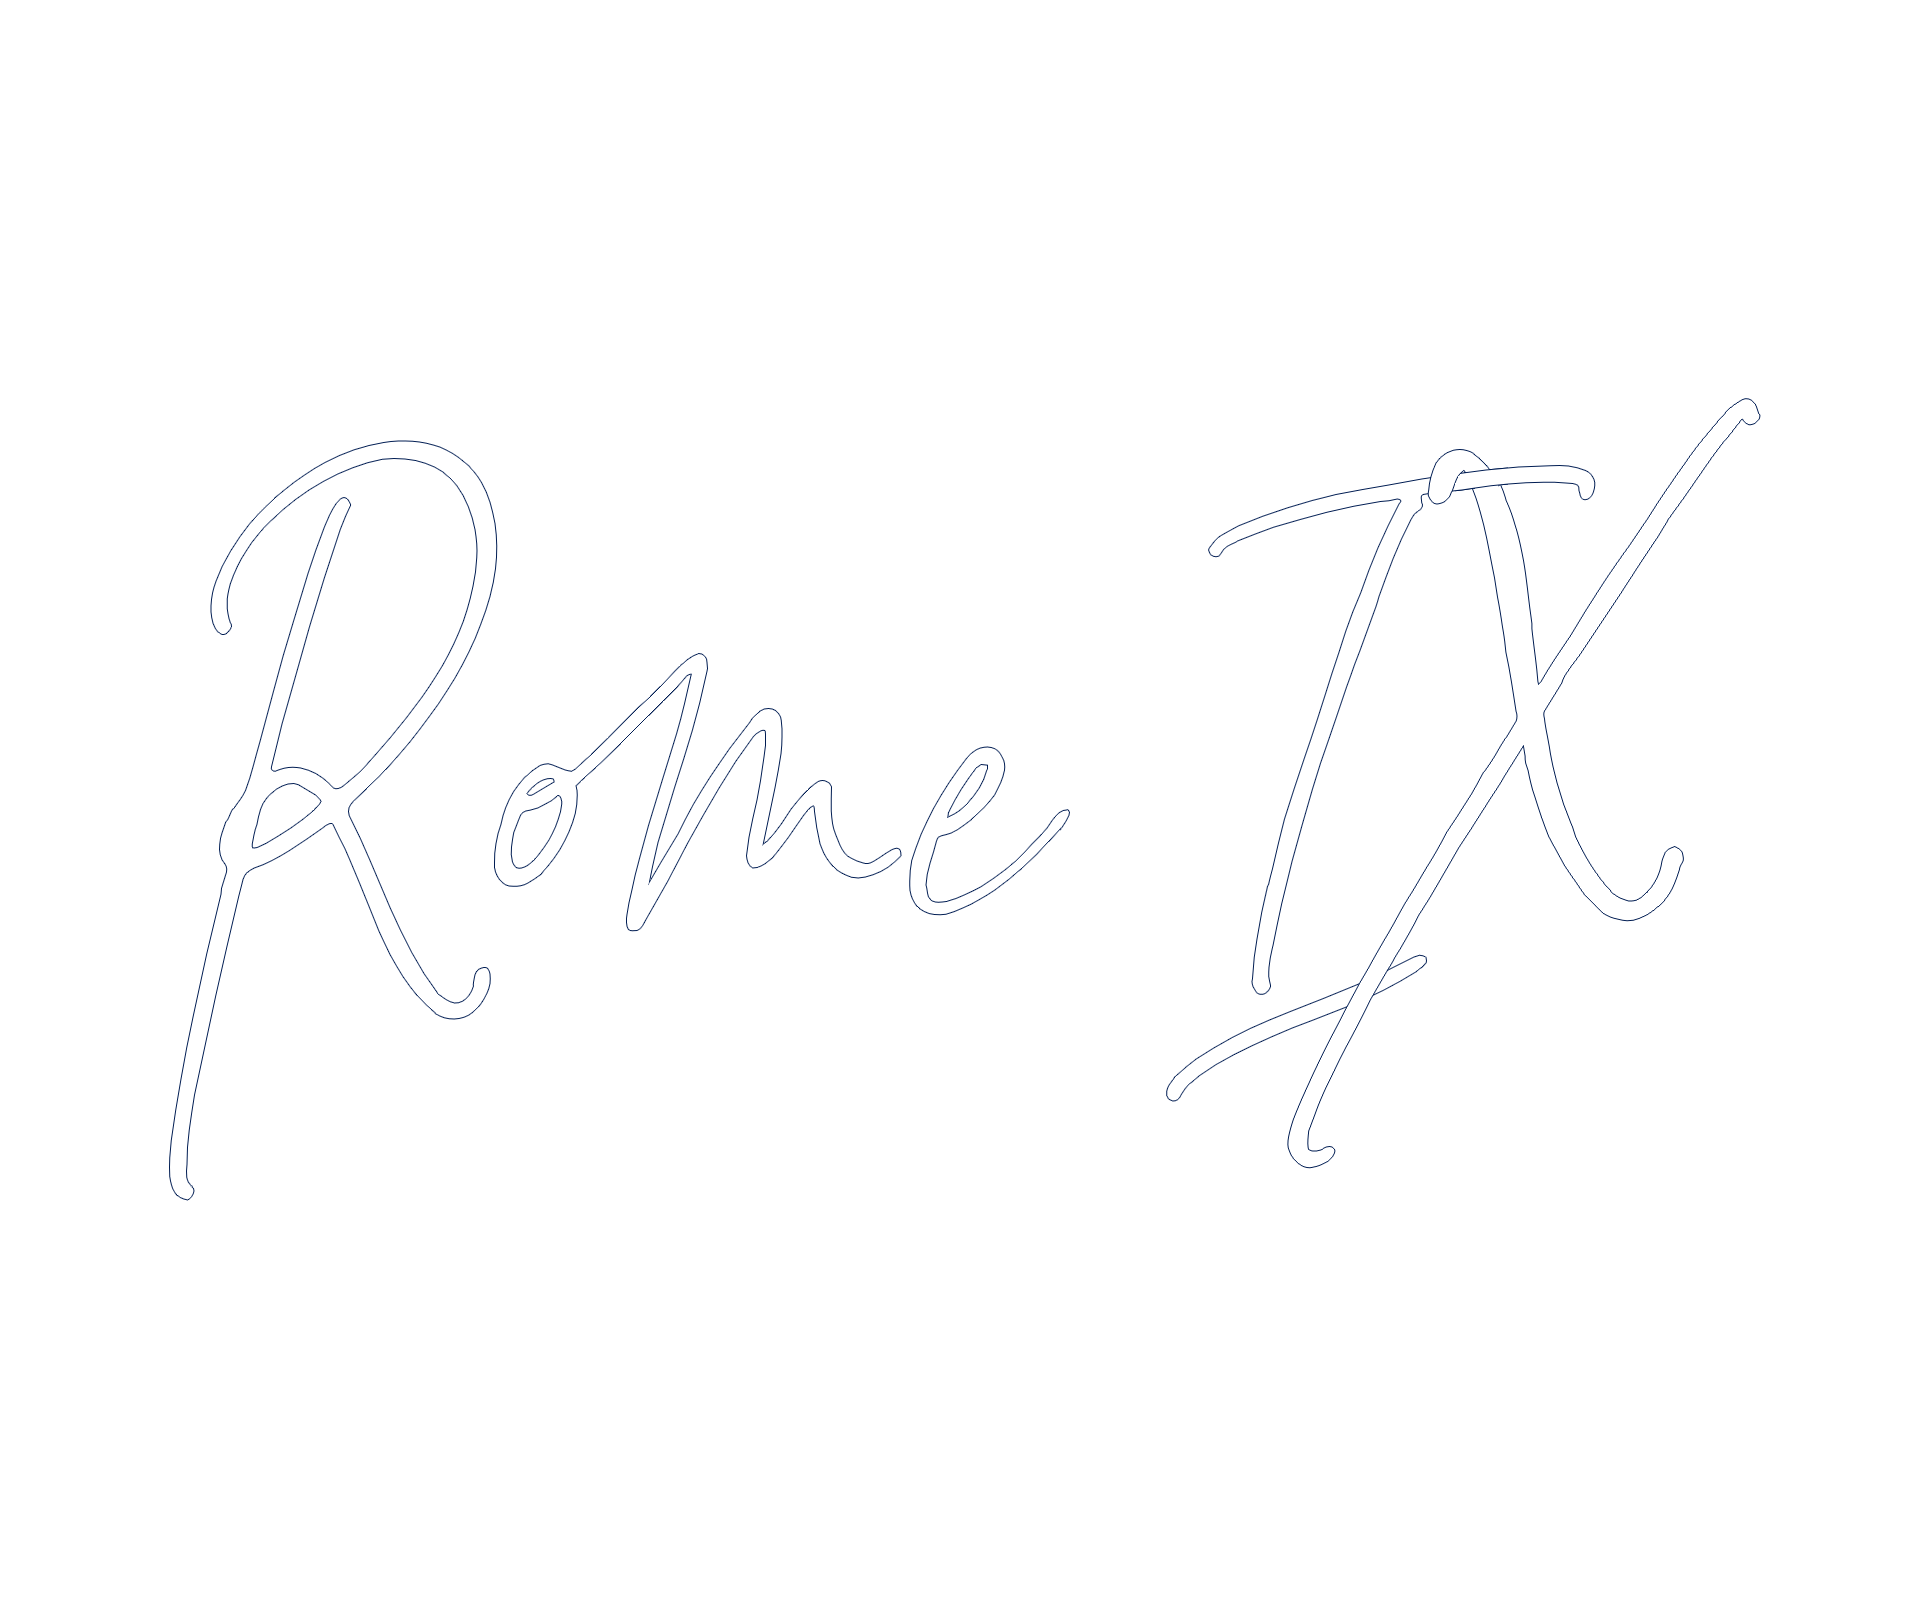 Rome IX